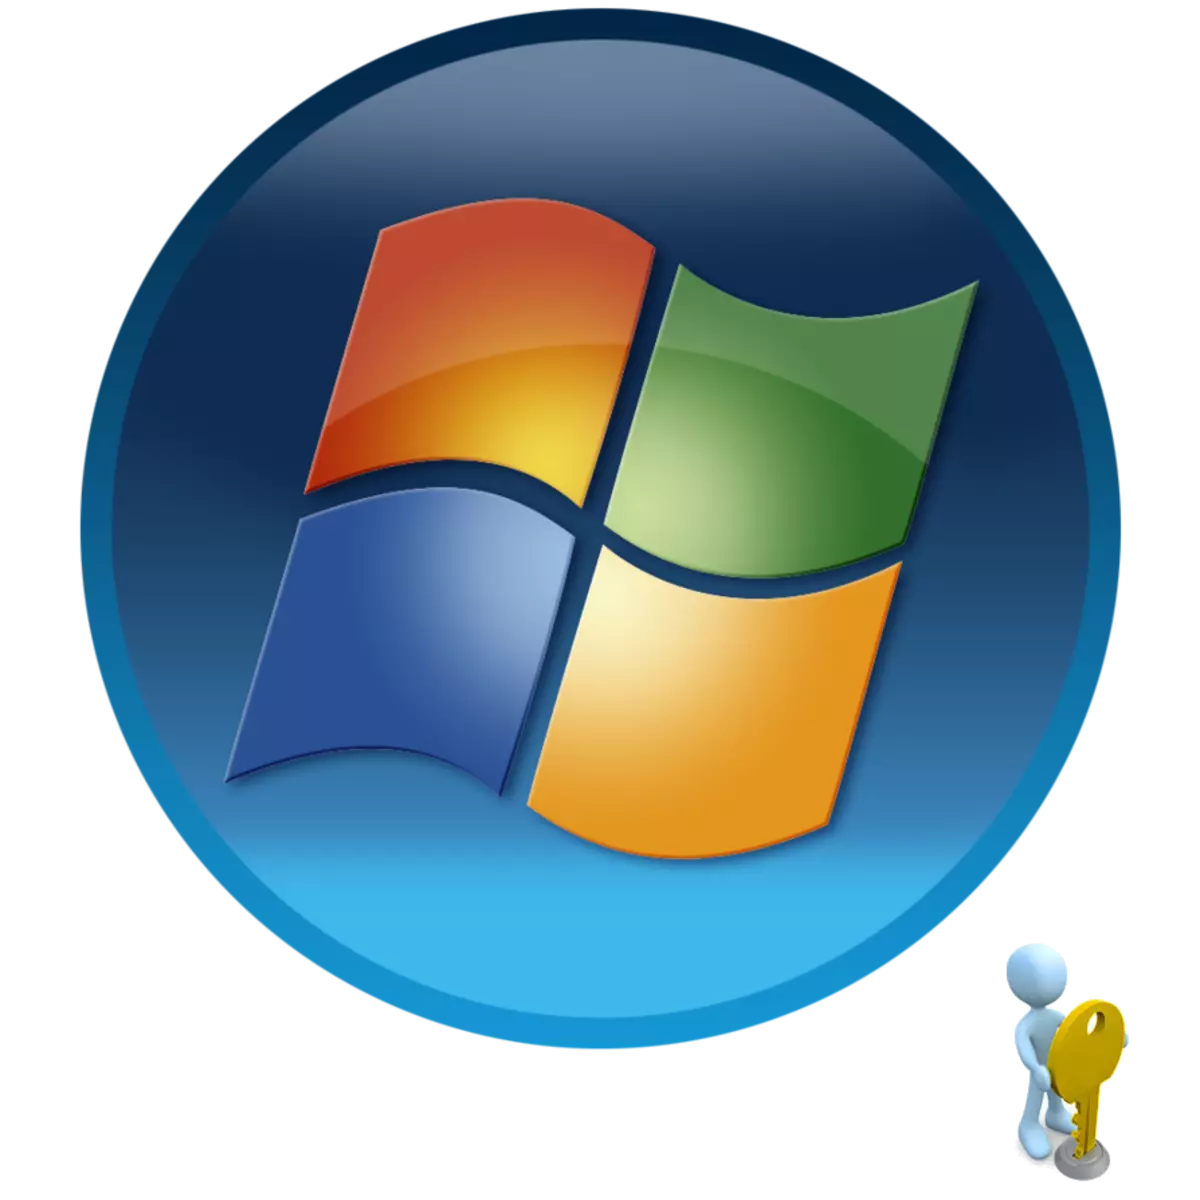 ວິທີການຊອກຫາລະຫັດລັບຂອງຜູ້ເບິ່ງແຍງລະບົບໃນ Windows 7